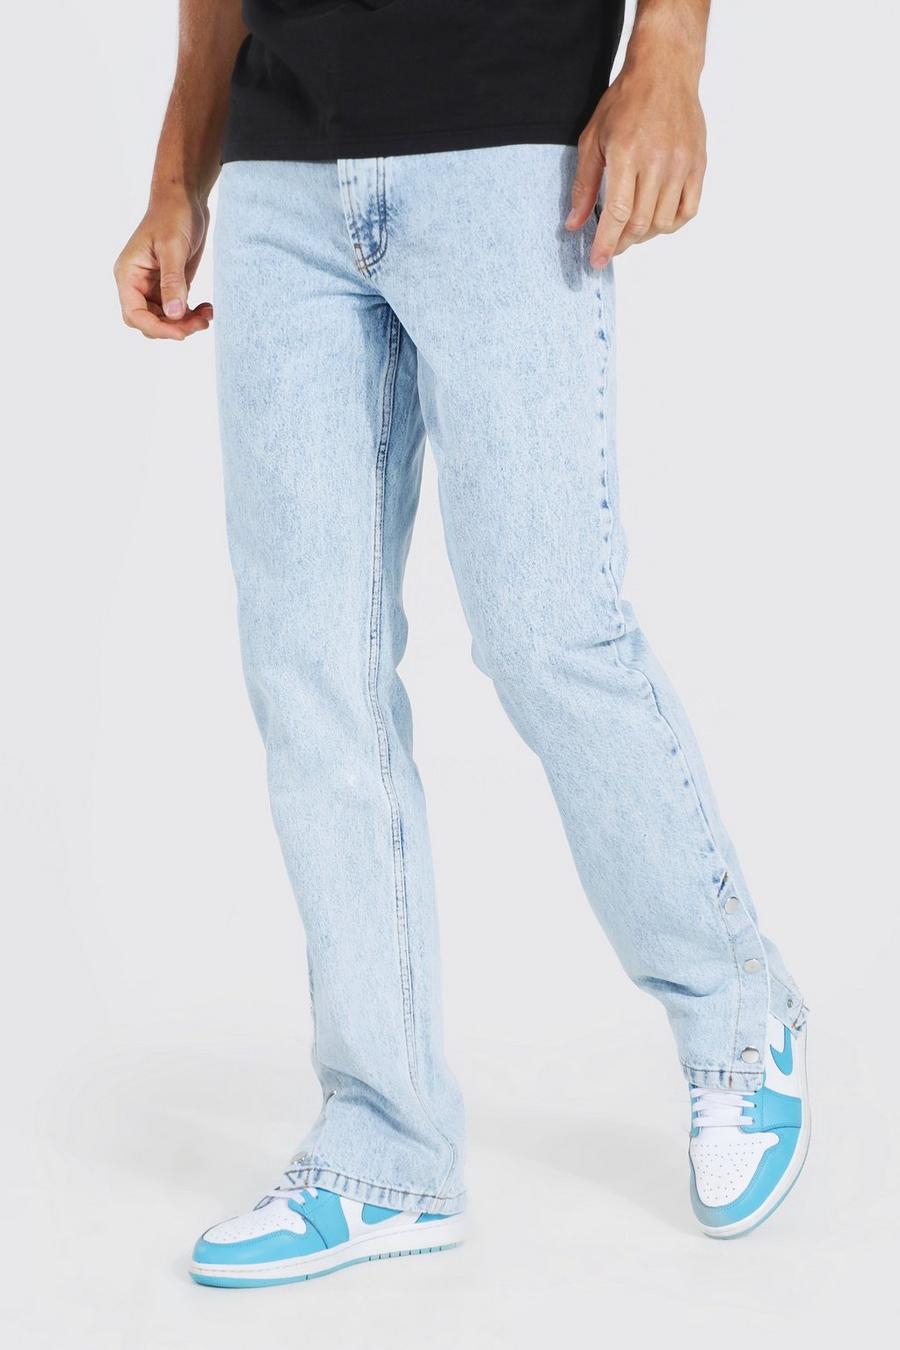 כחול קרח ג'ינס בגזרה ישרה עם מכפלת תיקתקים לגברים גבוהים